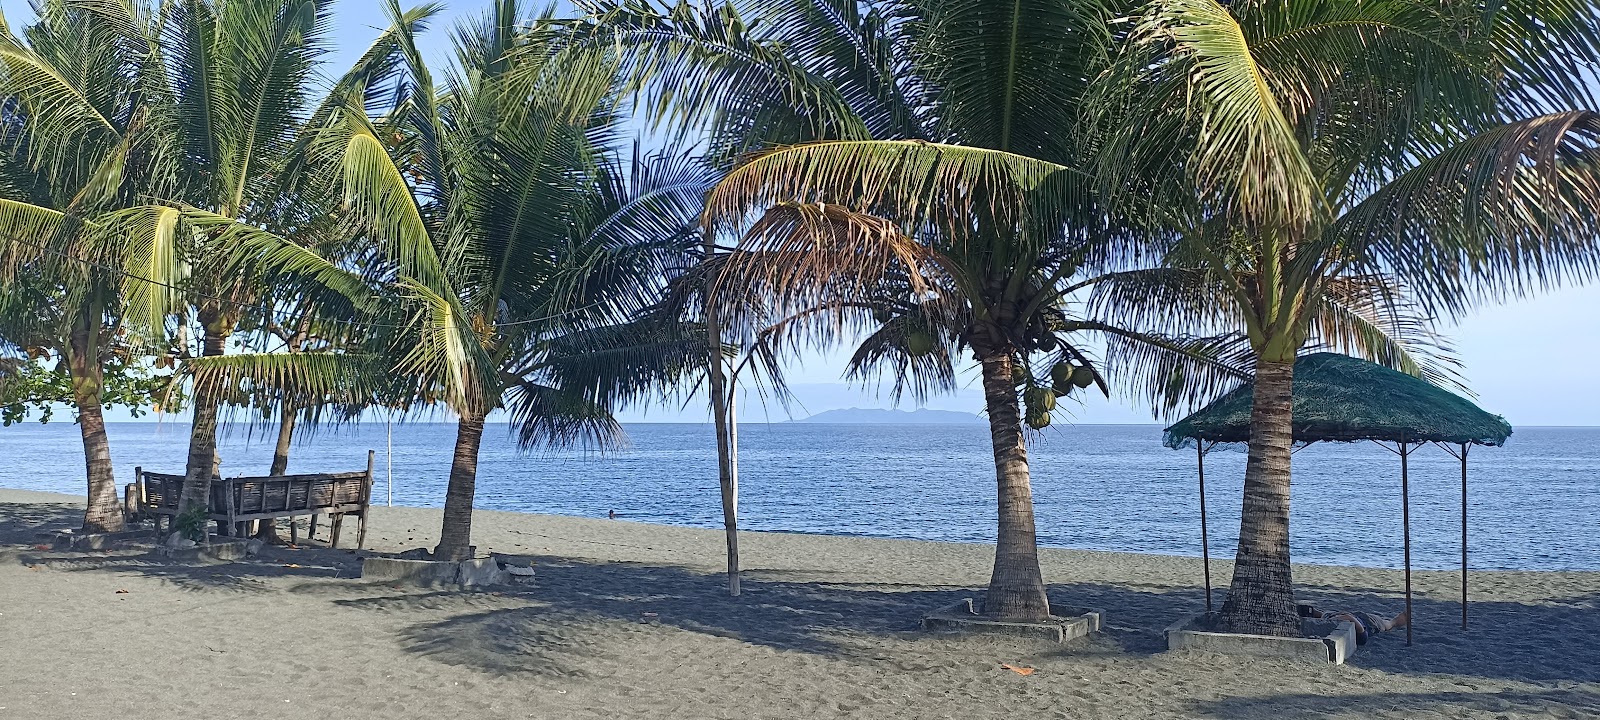 Fotografija Pinamalayan Beach priljubljeno mesto med poznavalci sprostitve